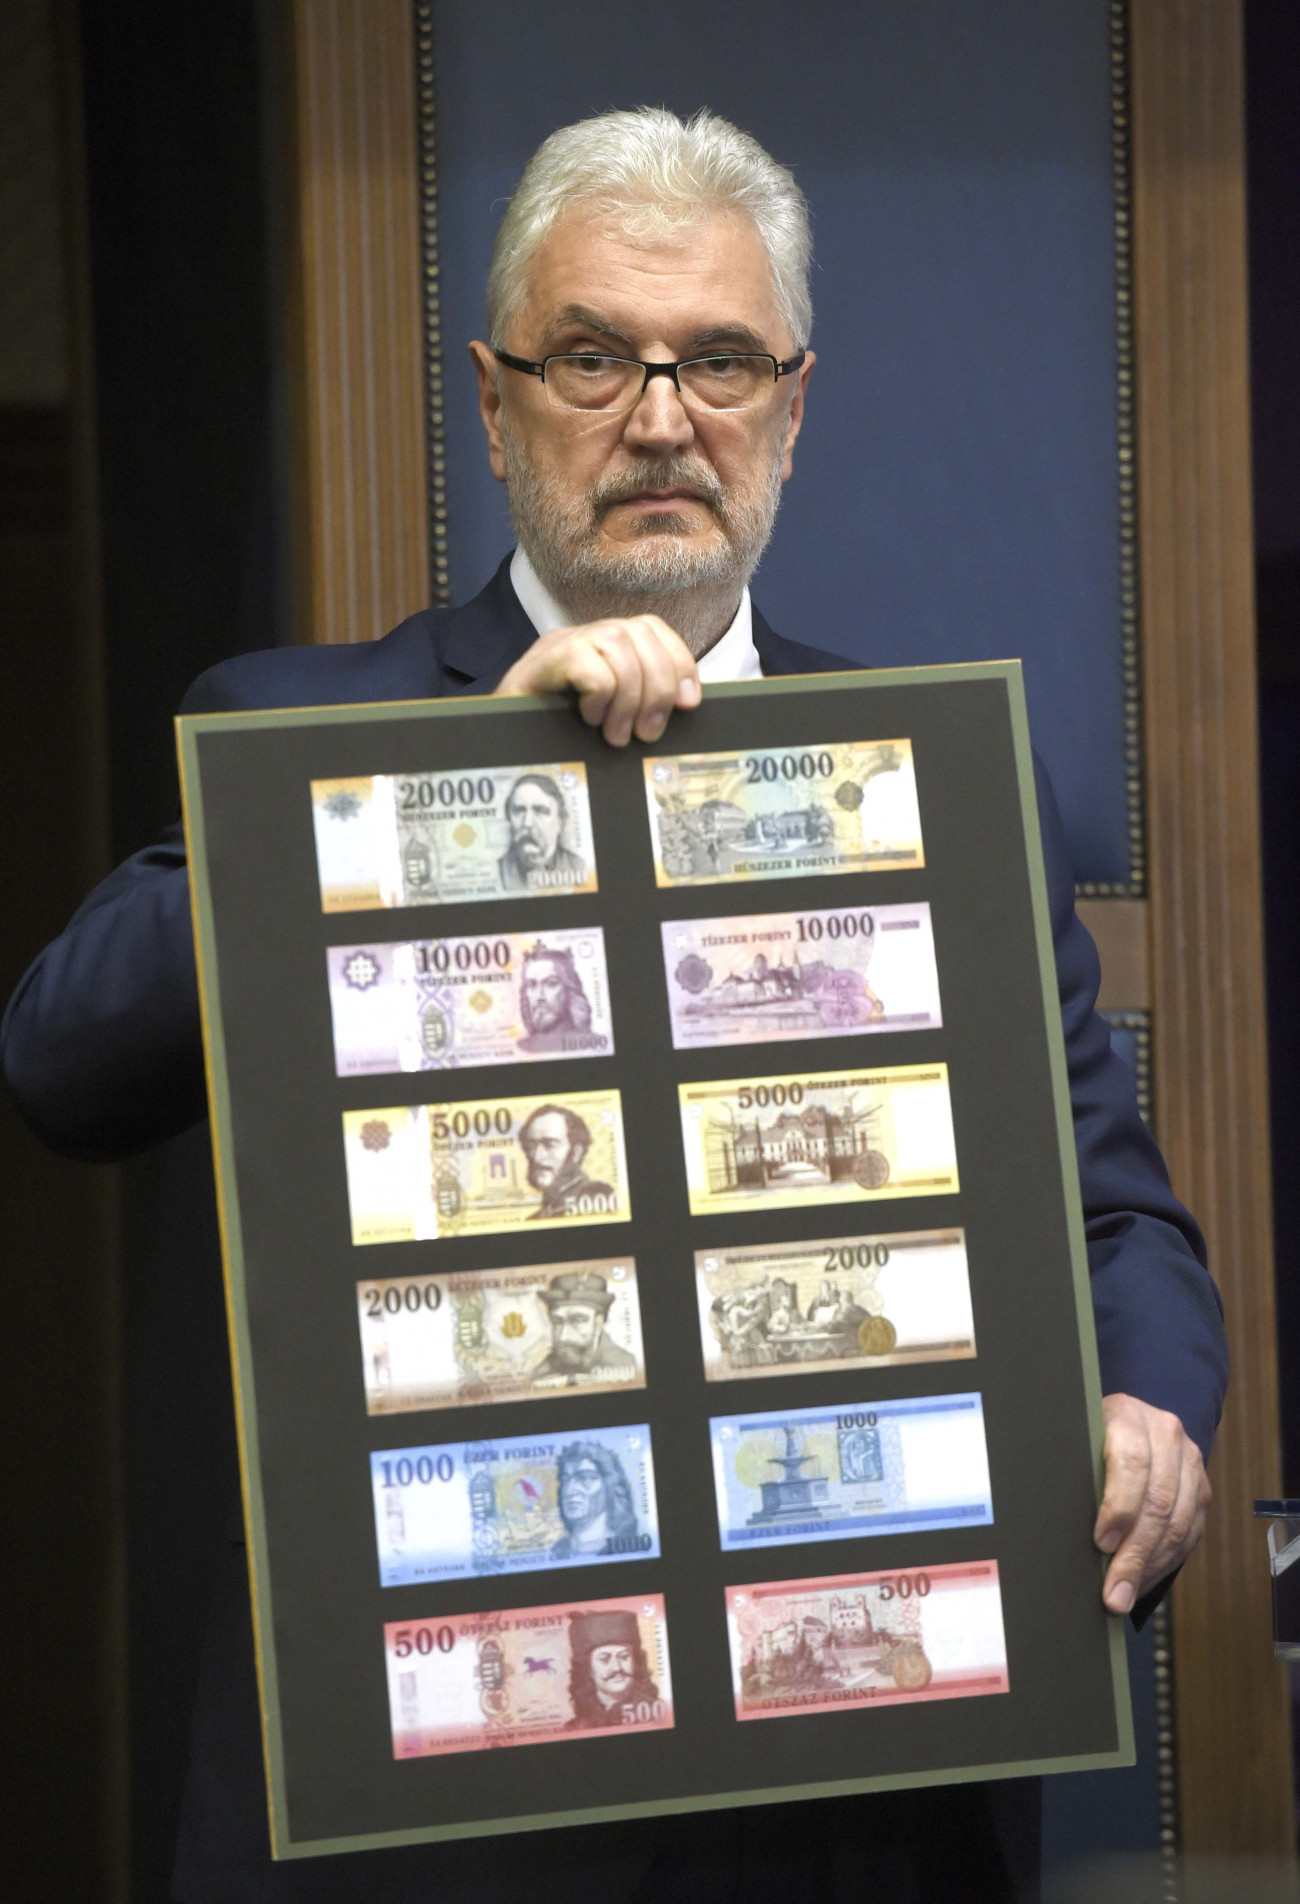 Budapest, 2018. július 3.
Pataki Tibor, az MNB Készpénzlogisztikai Igazgatóságának vezetője mutatja a forgalomban lévő bankjegyeket, alul az új 500 forintos az MNB Teátrumában tartott sajtótájékoztatón 2018. július 3-án. Az MNB 2014-ben megkezdett bankjegycsereprogramja hamarosan lezárul, a sorozat utolsó elemeként megújult az 500 forintos is. A most használatos 500 forintos bankjegyekkel 2019. október 31-ig lehet fizetni.
MTI Fotó: Bruzák Noémi